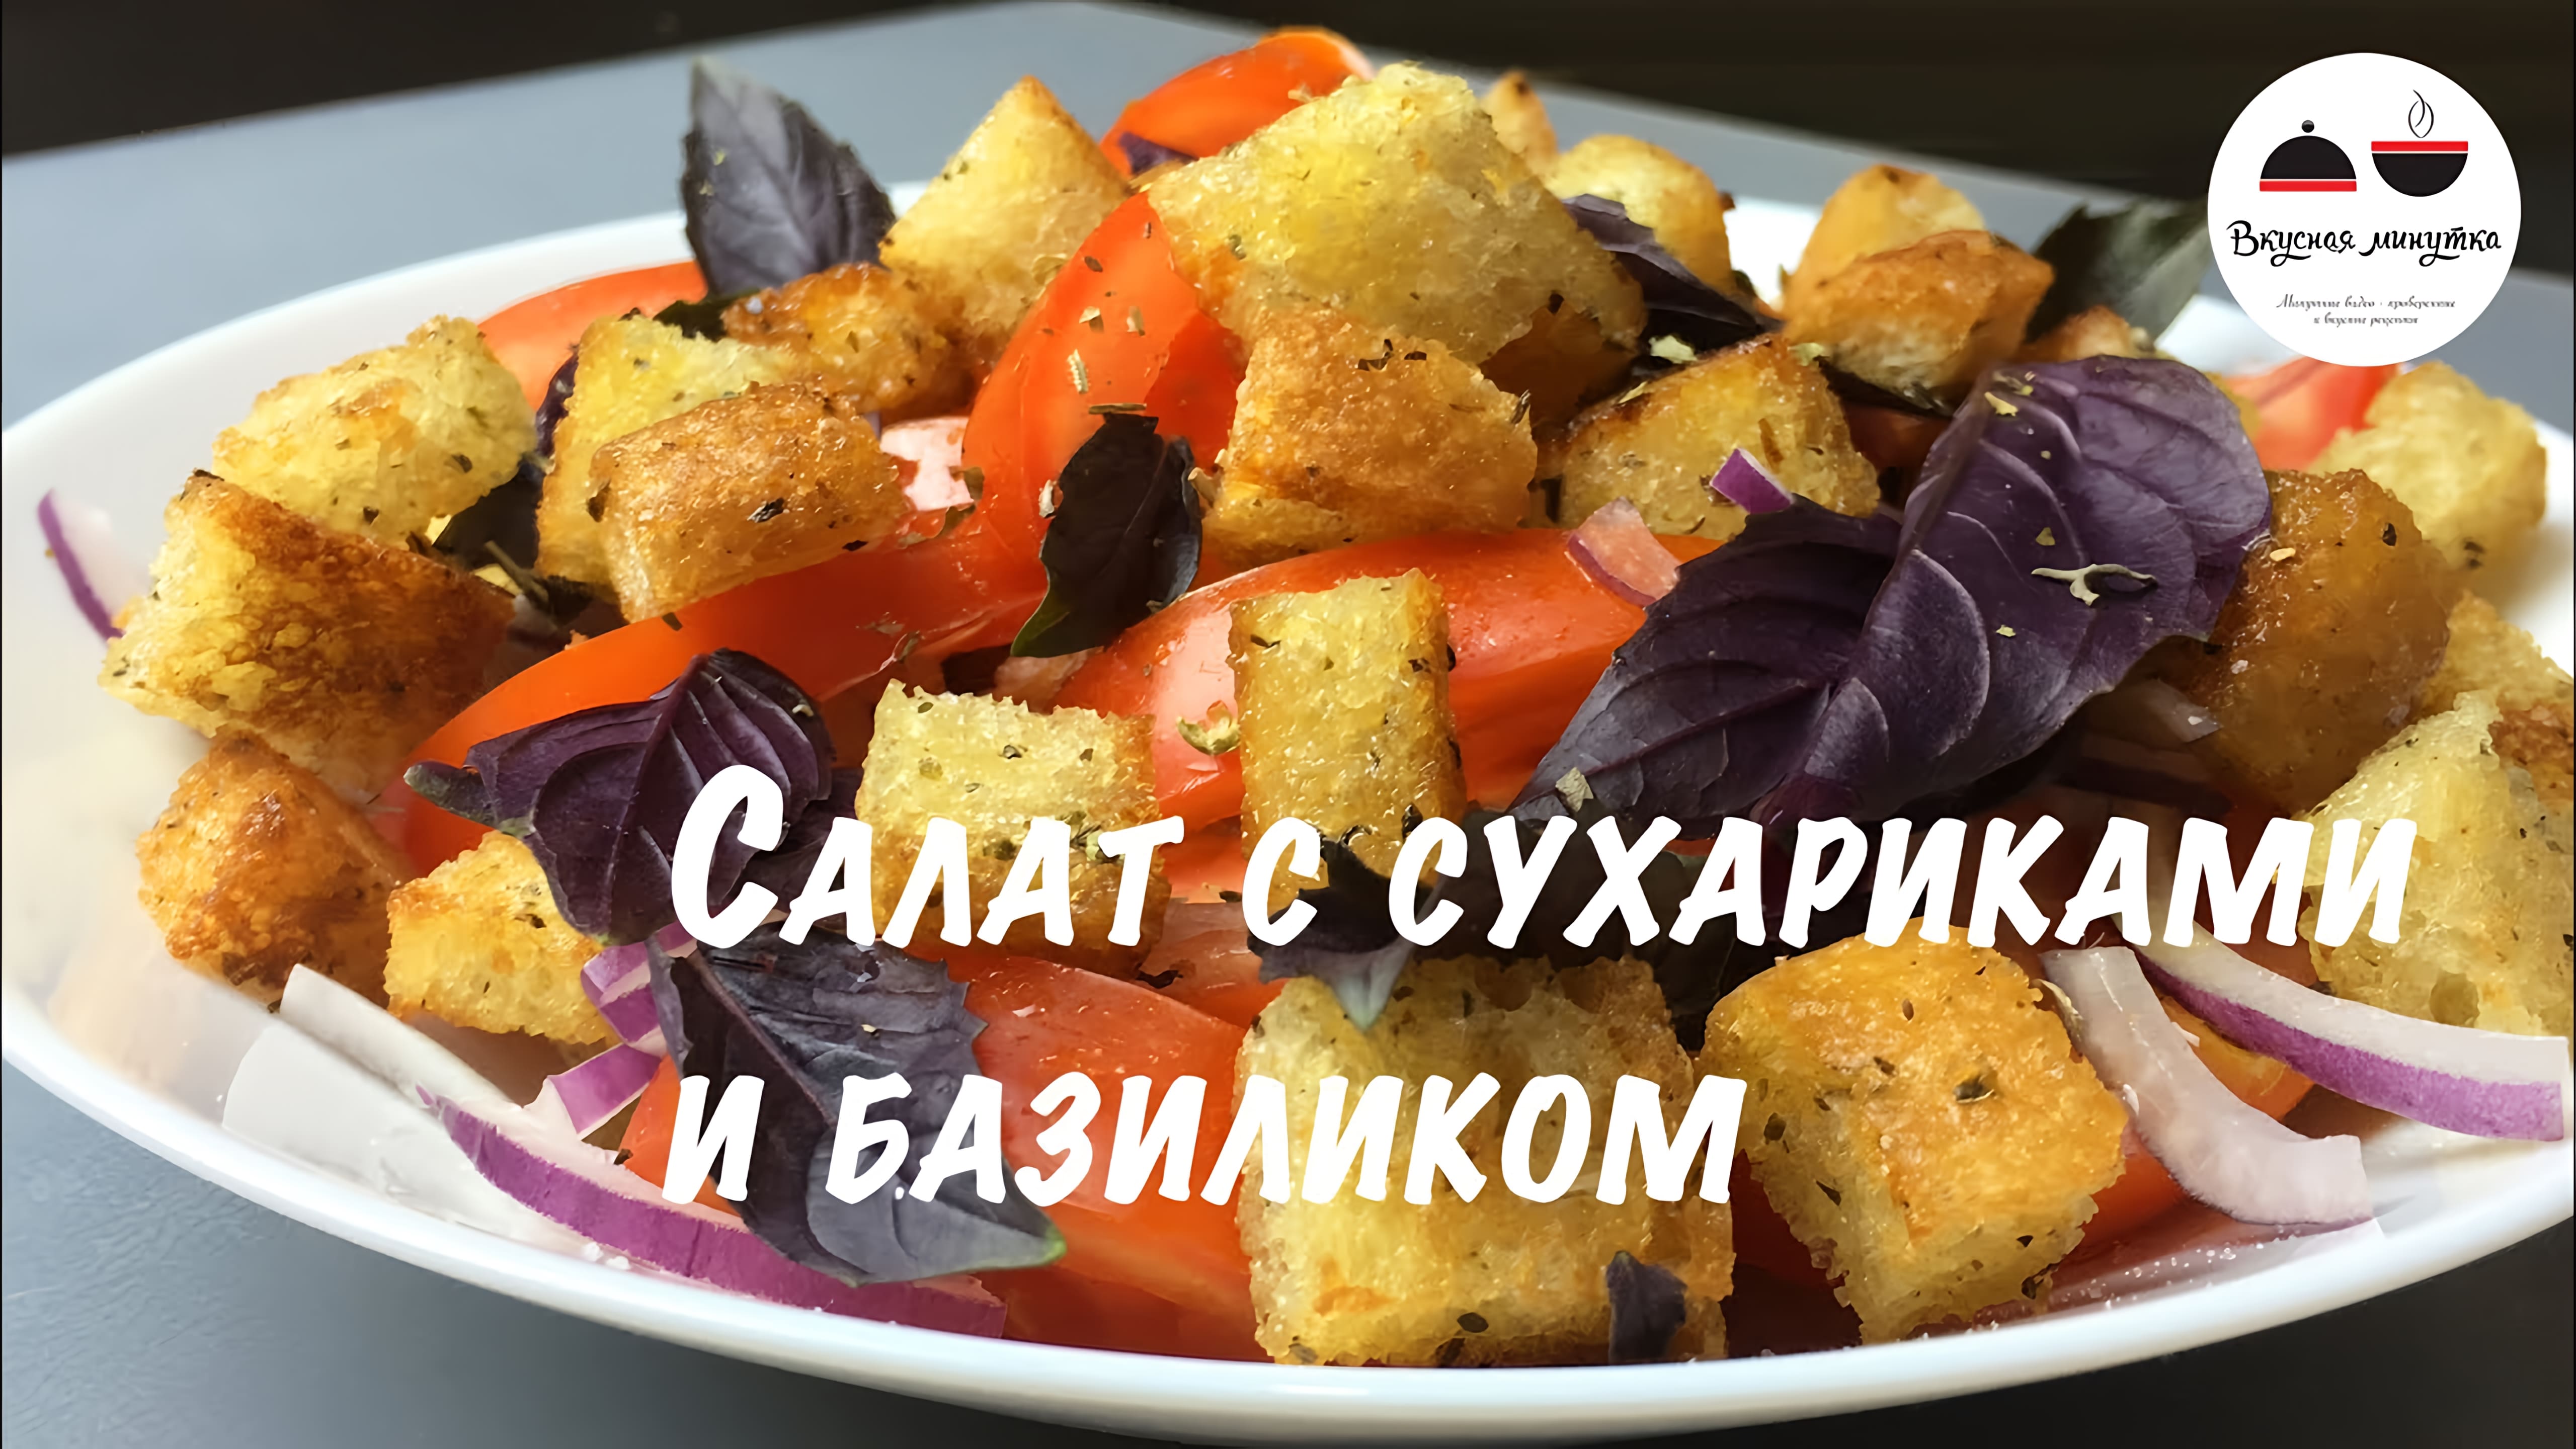 Видео: Салат с сухариками и базиликом  Легкий, ароматный и вкусный летний салатик  Salad with basil